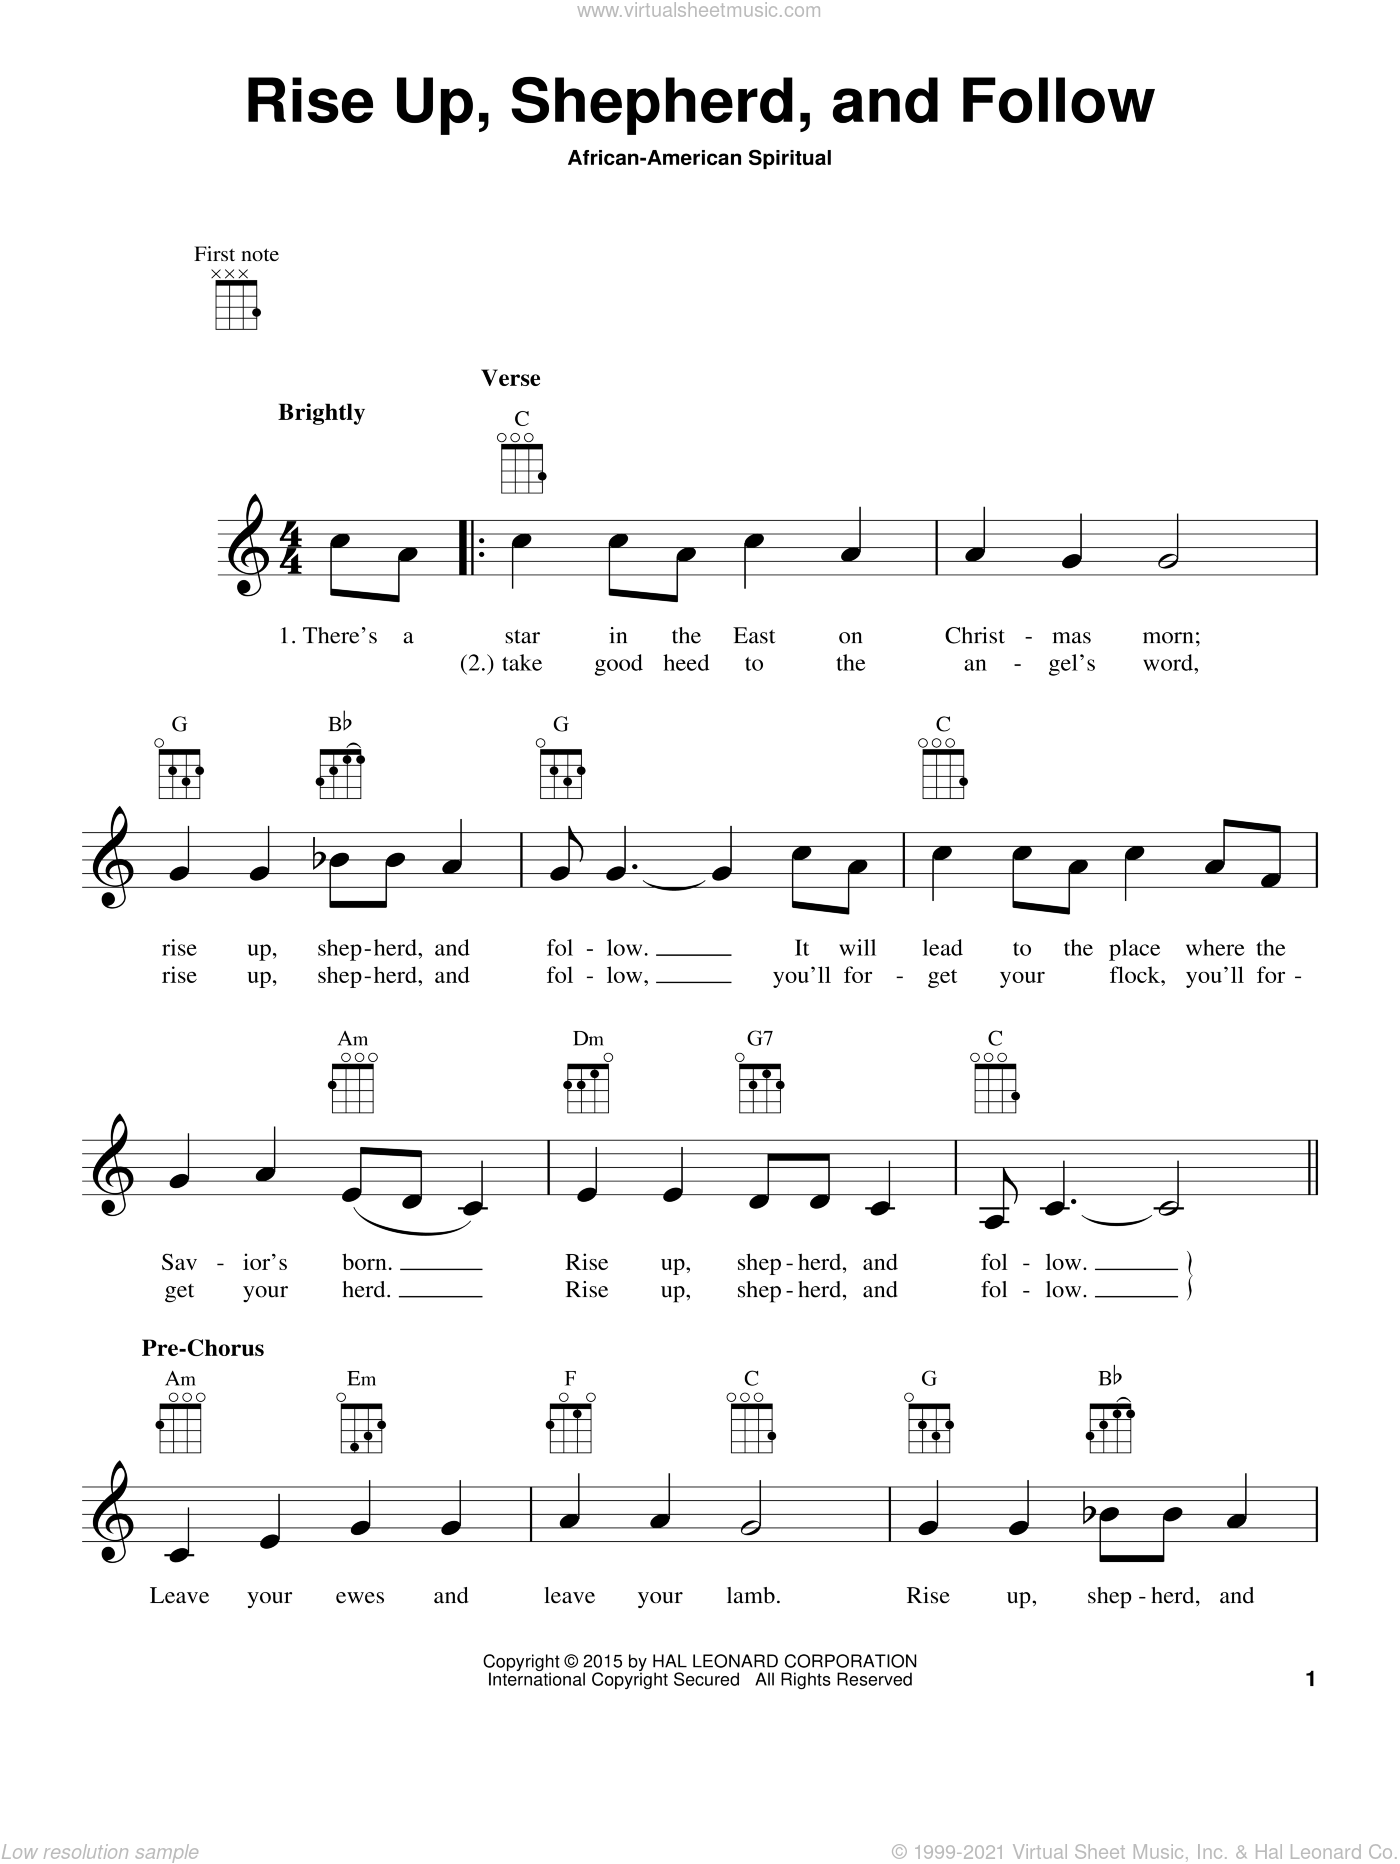 Rise Up, Shepherd, And Follow sheet music for ukulele PDF